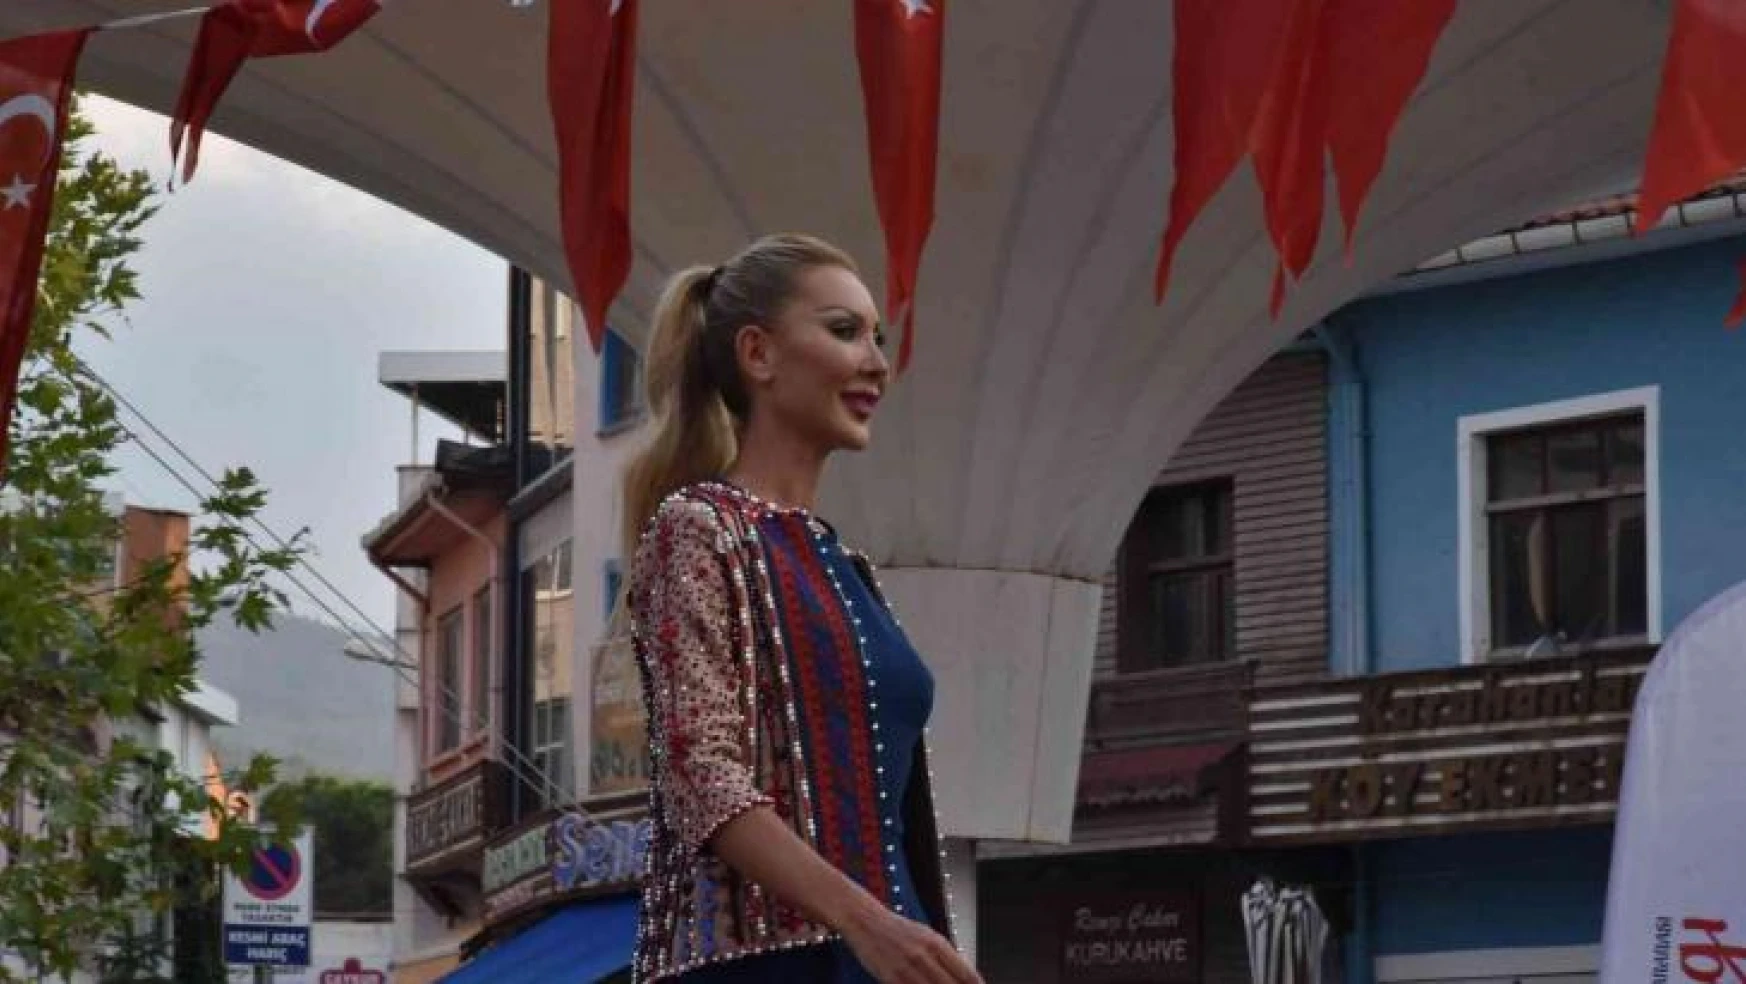 Yağcıbedir'in 3 bin yıllık kültürü modaya dönüştü